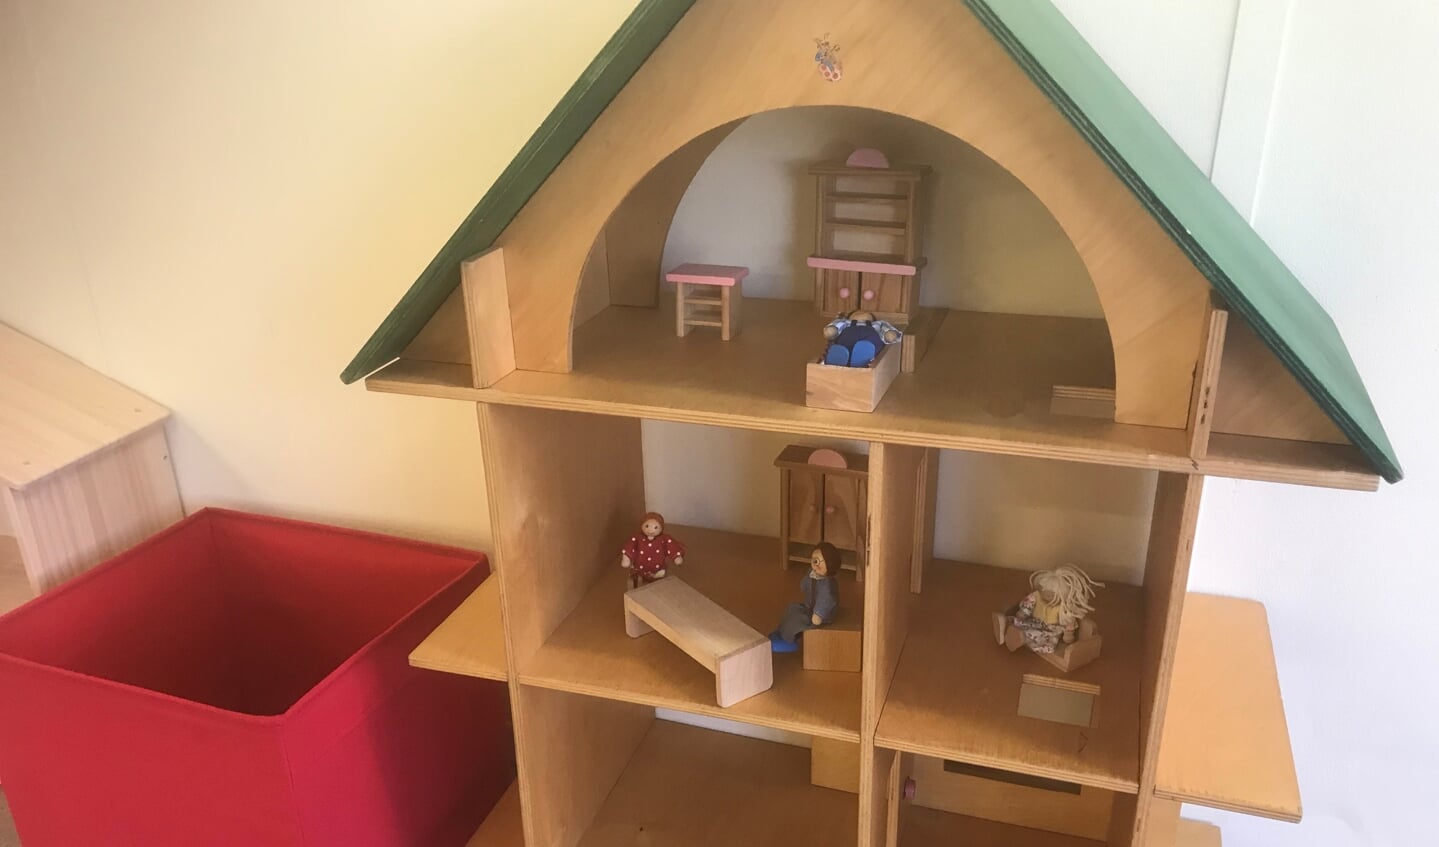 Het poppenhuis in de kinderkamer van de noodopvang voor asielzoekers in Gorinchem